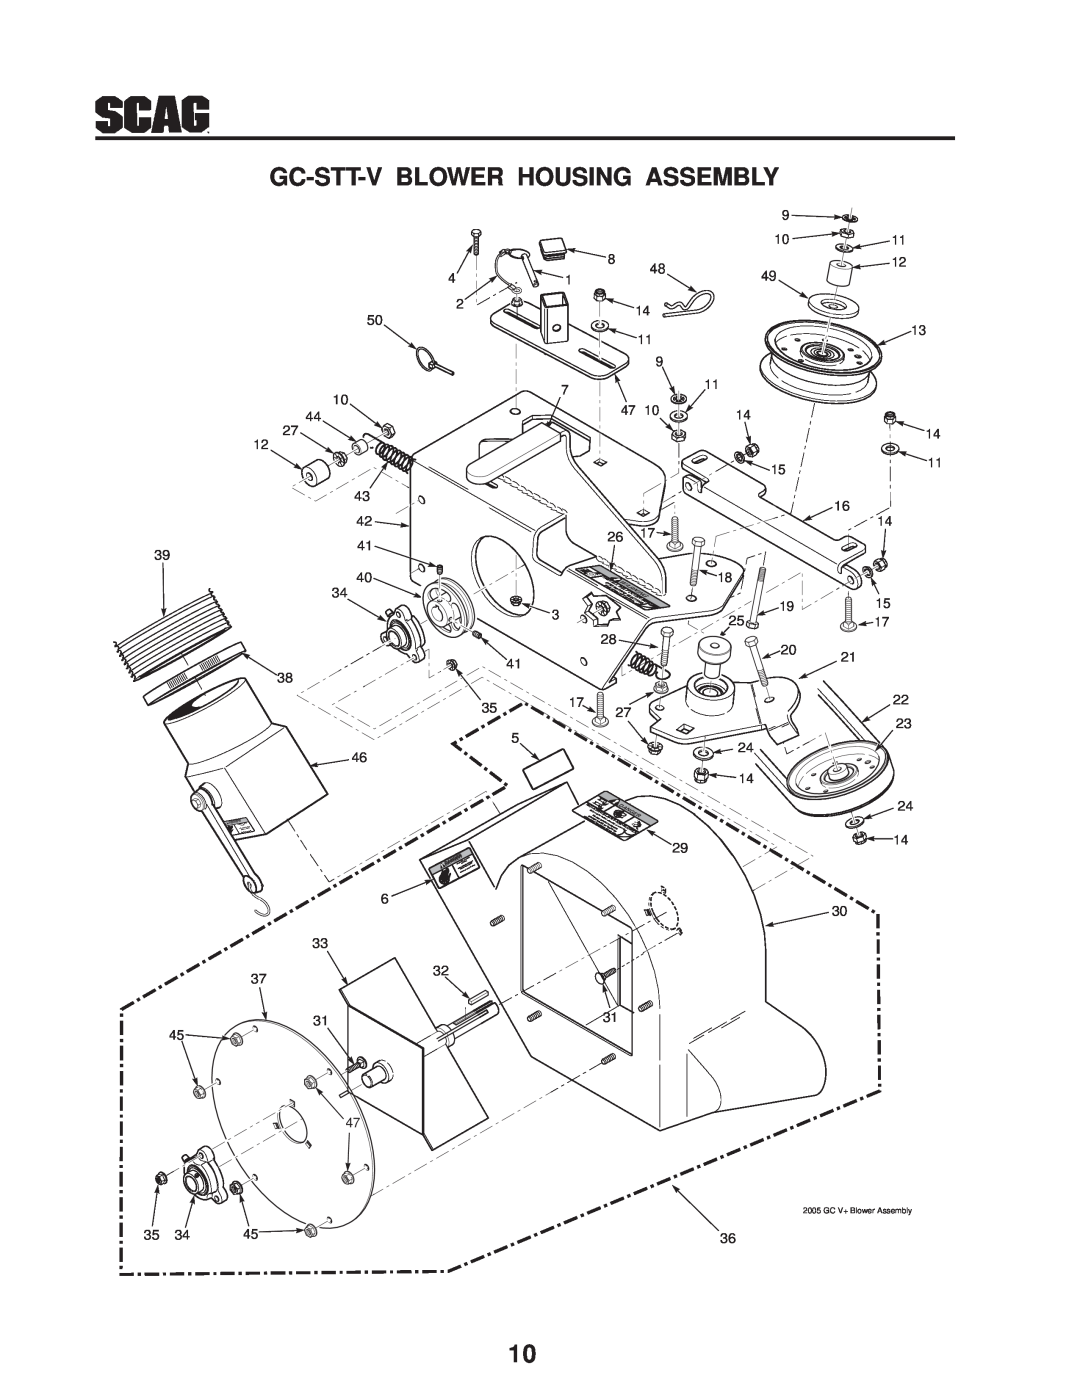 Scag Power Equipment GC-STT-CSV manual Gc-Stt-V Blower Housing Assembly, Err Dange 